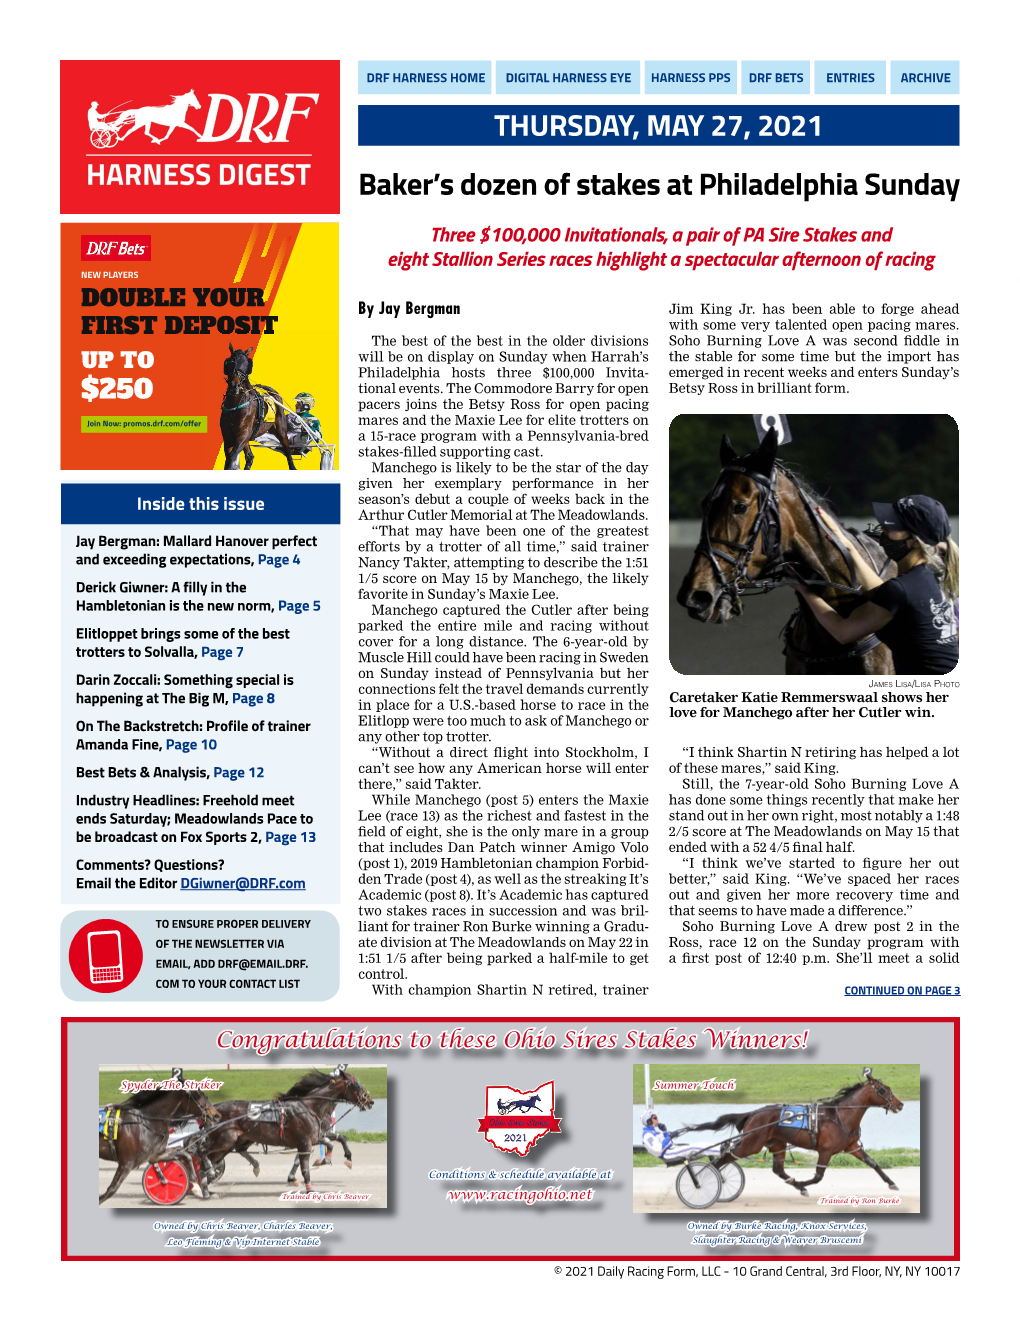 Baker's Dozen of Stakes at Philadelphia Sunday THURSDAY